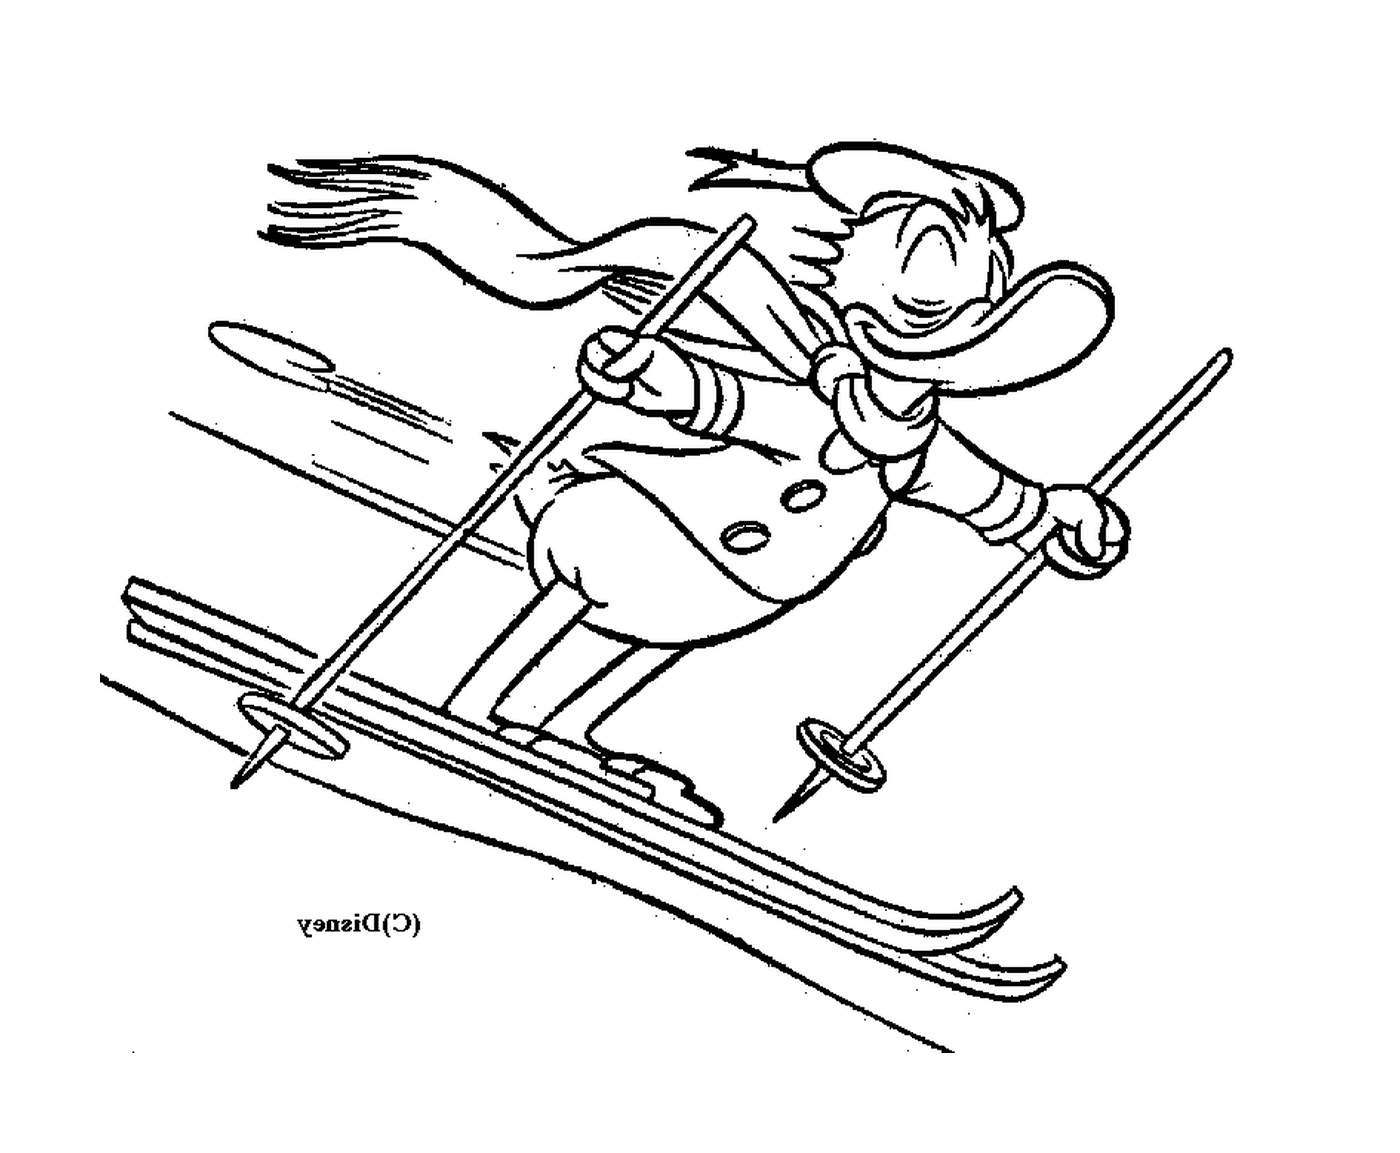  Donald rilassa le piste da sci con facilità 